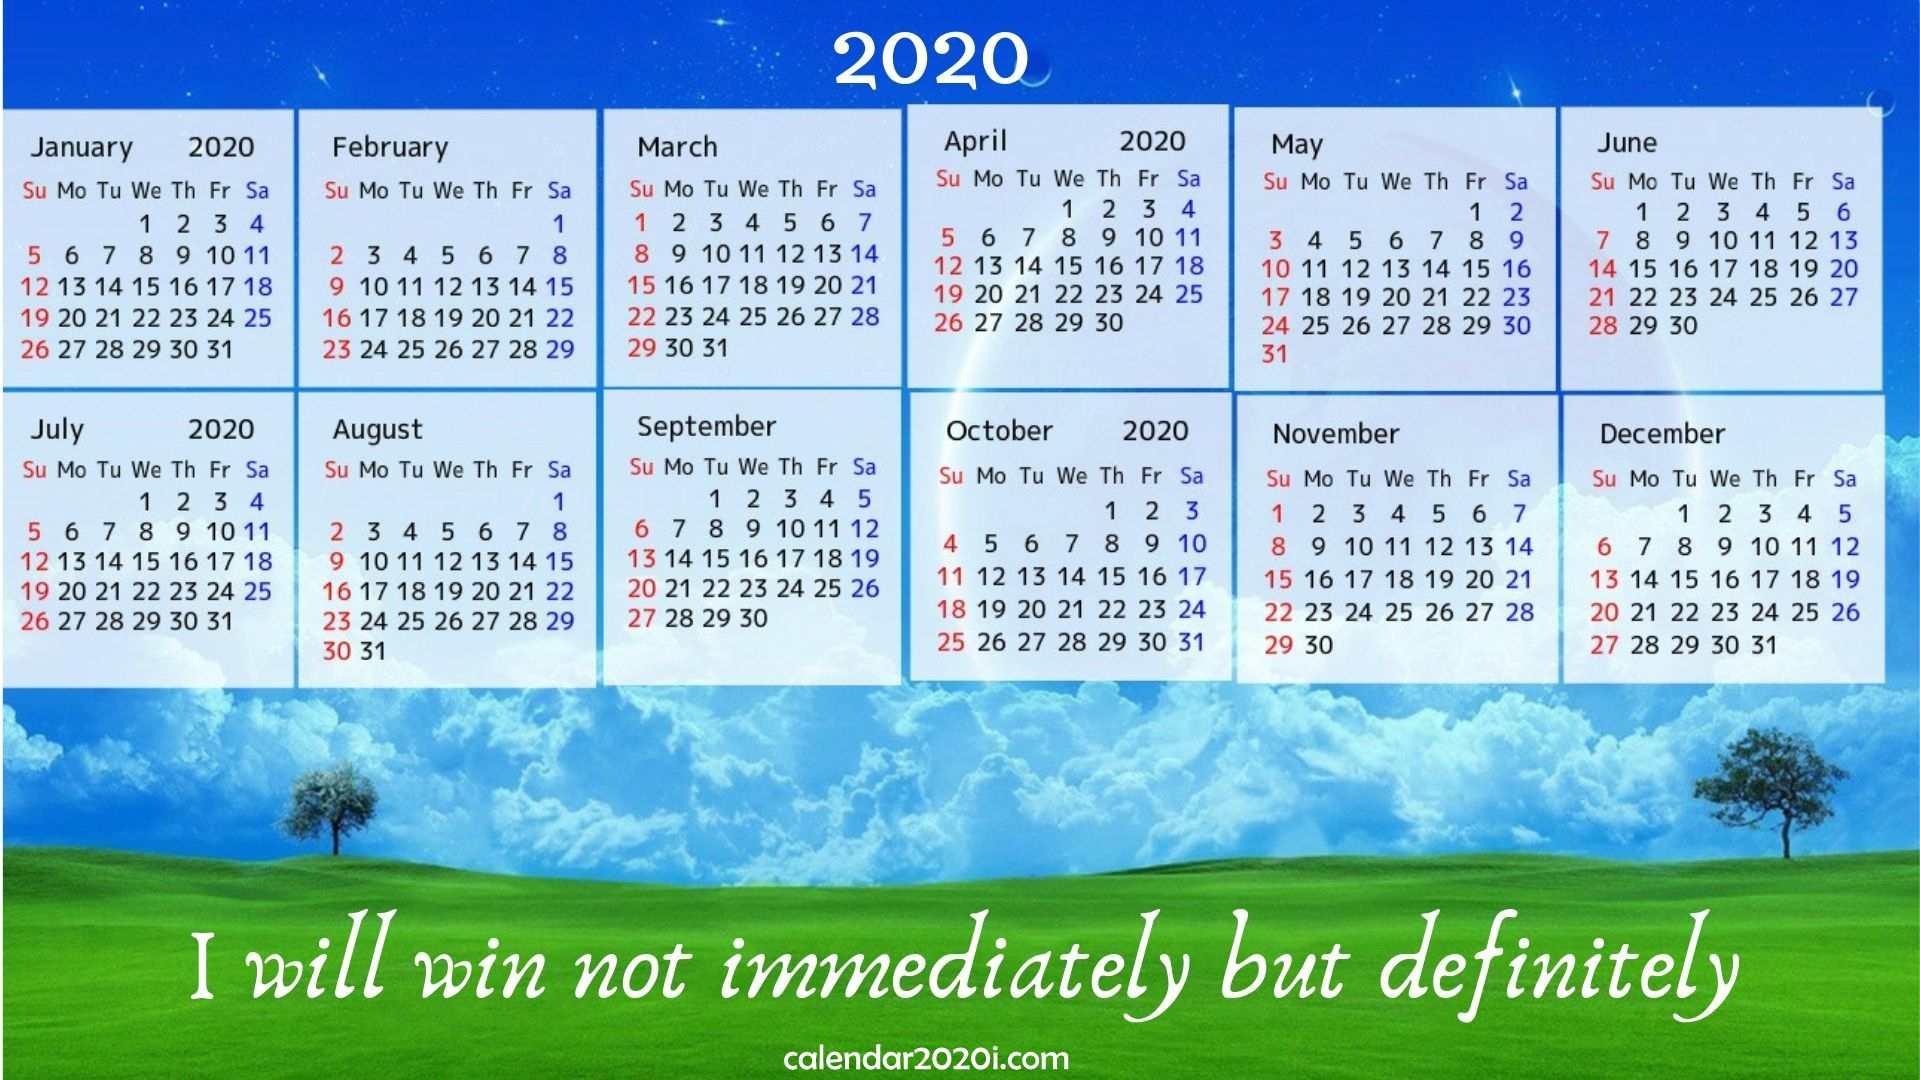 2020 Calendar With Inspirational Quotes, Sayings | Calendar 2020